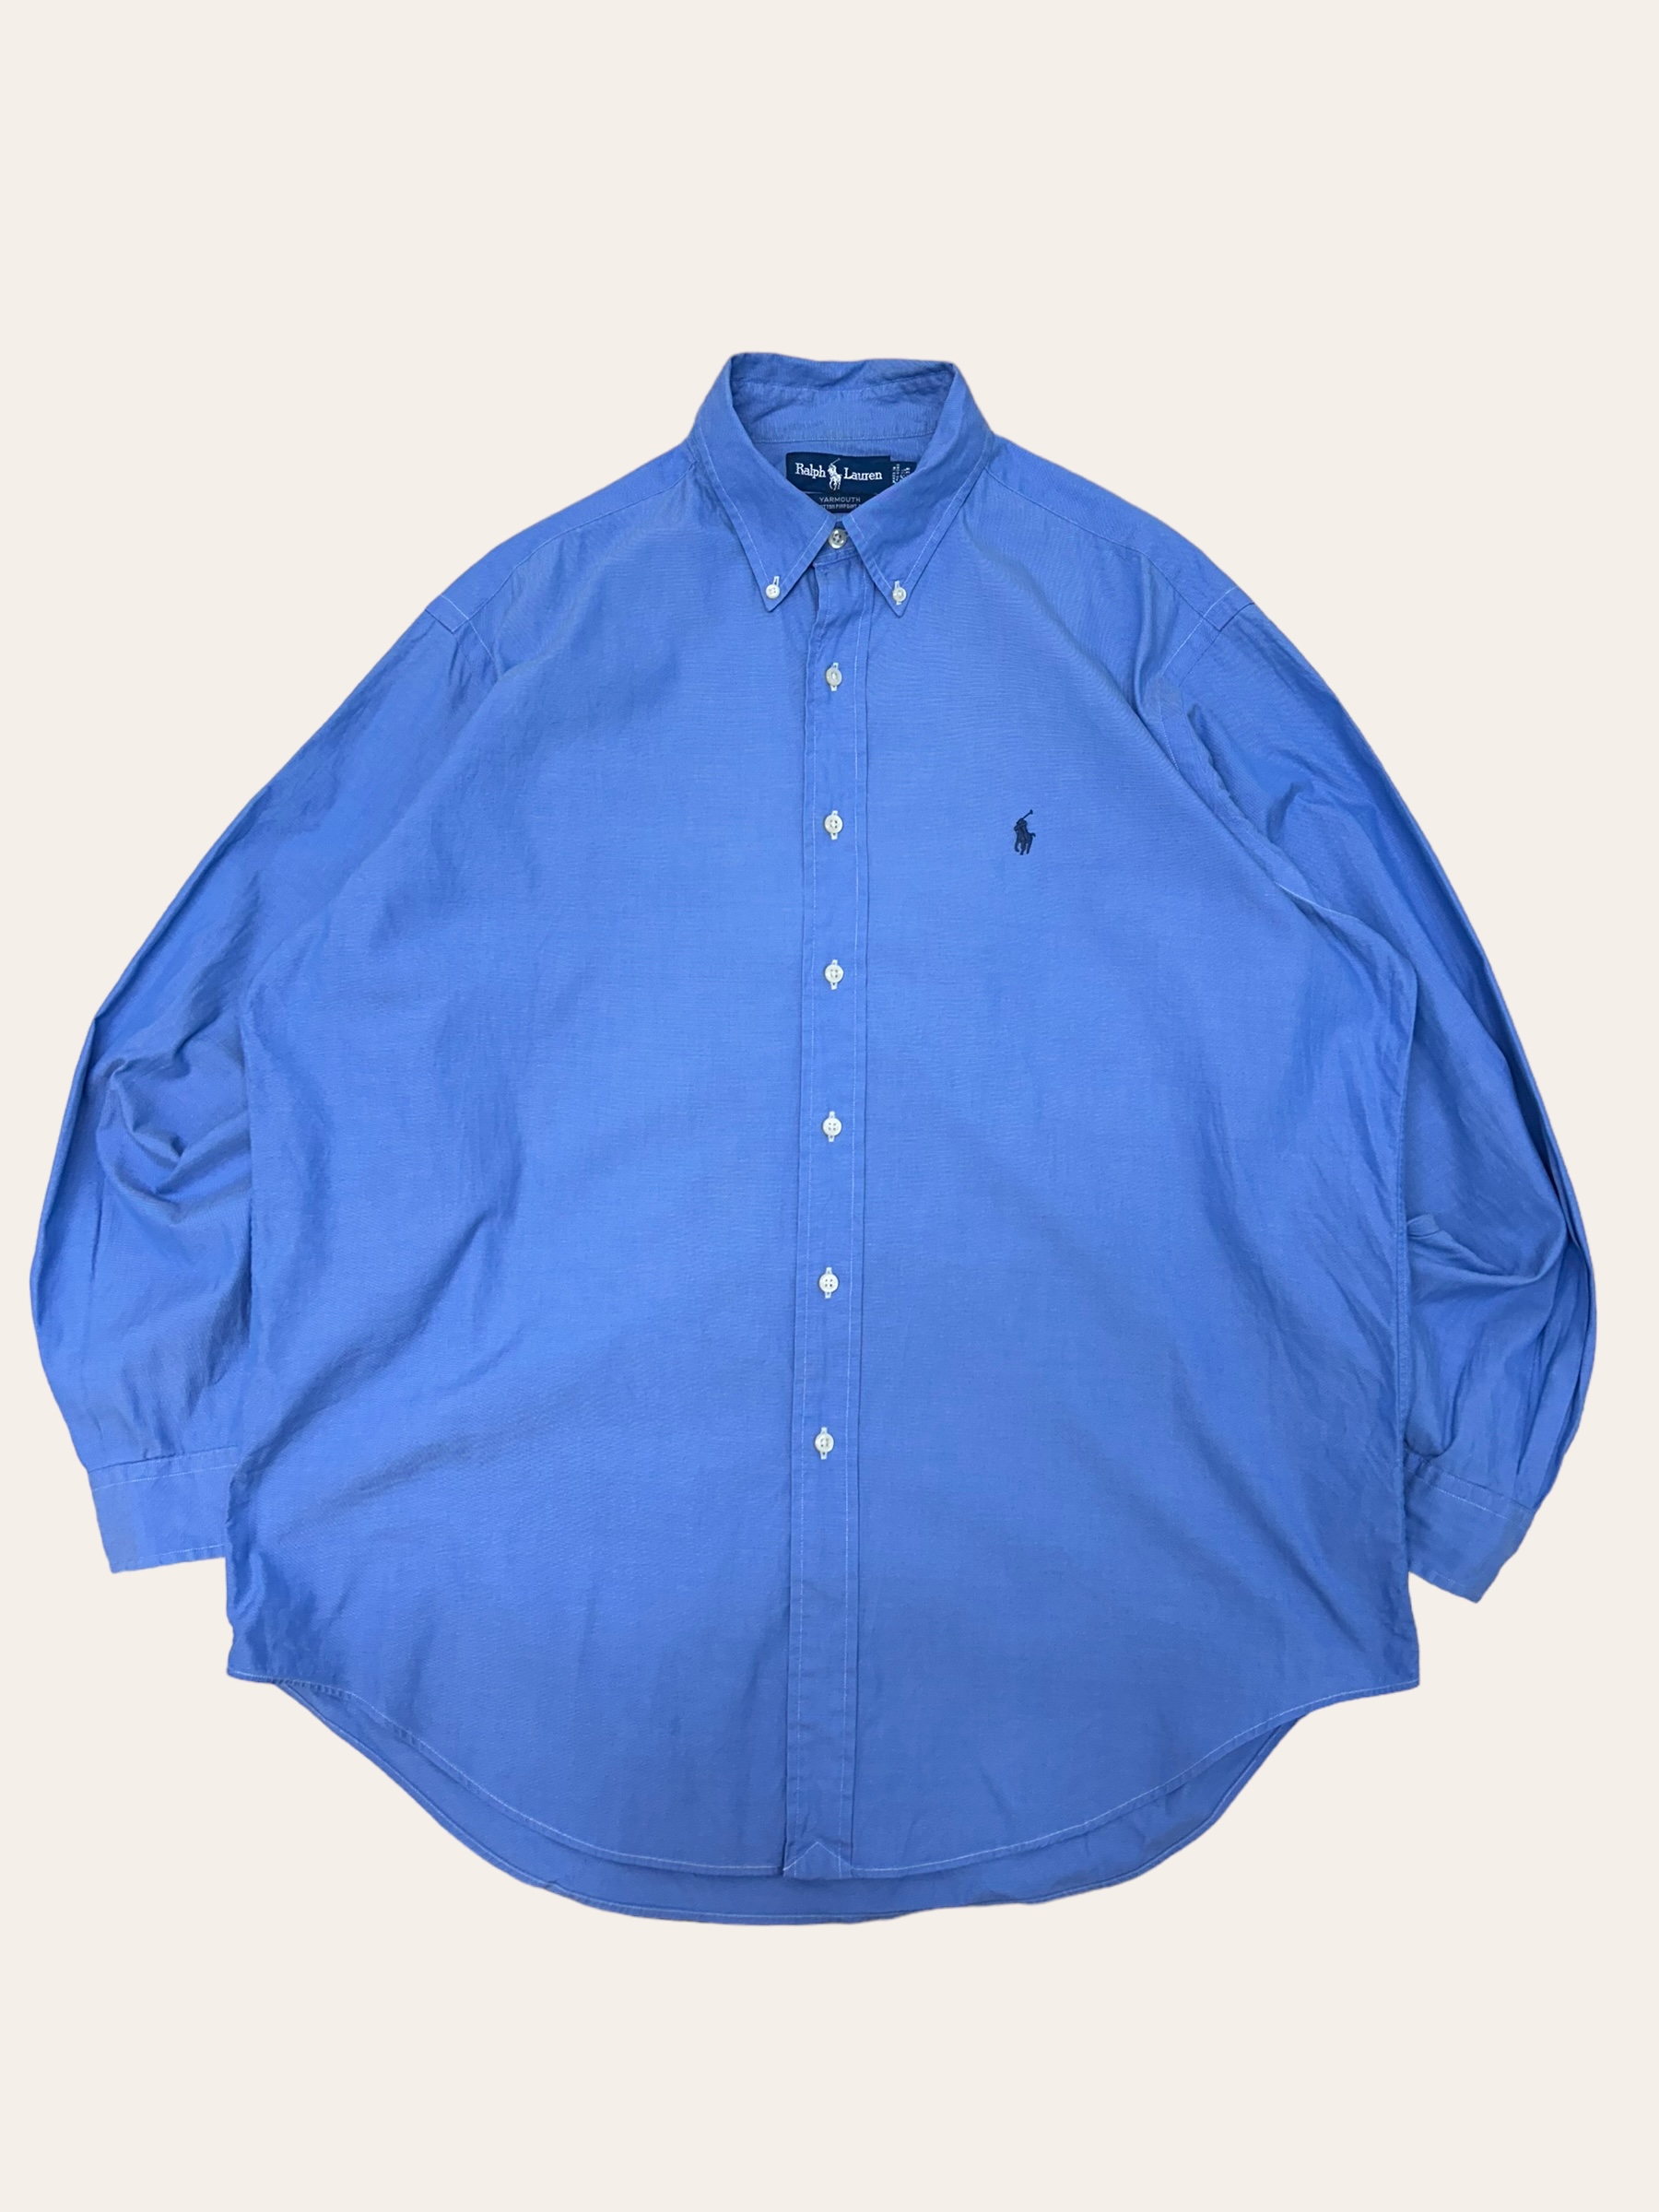 (From USA)Polo ralph lauren blue poplin shirt 16.5